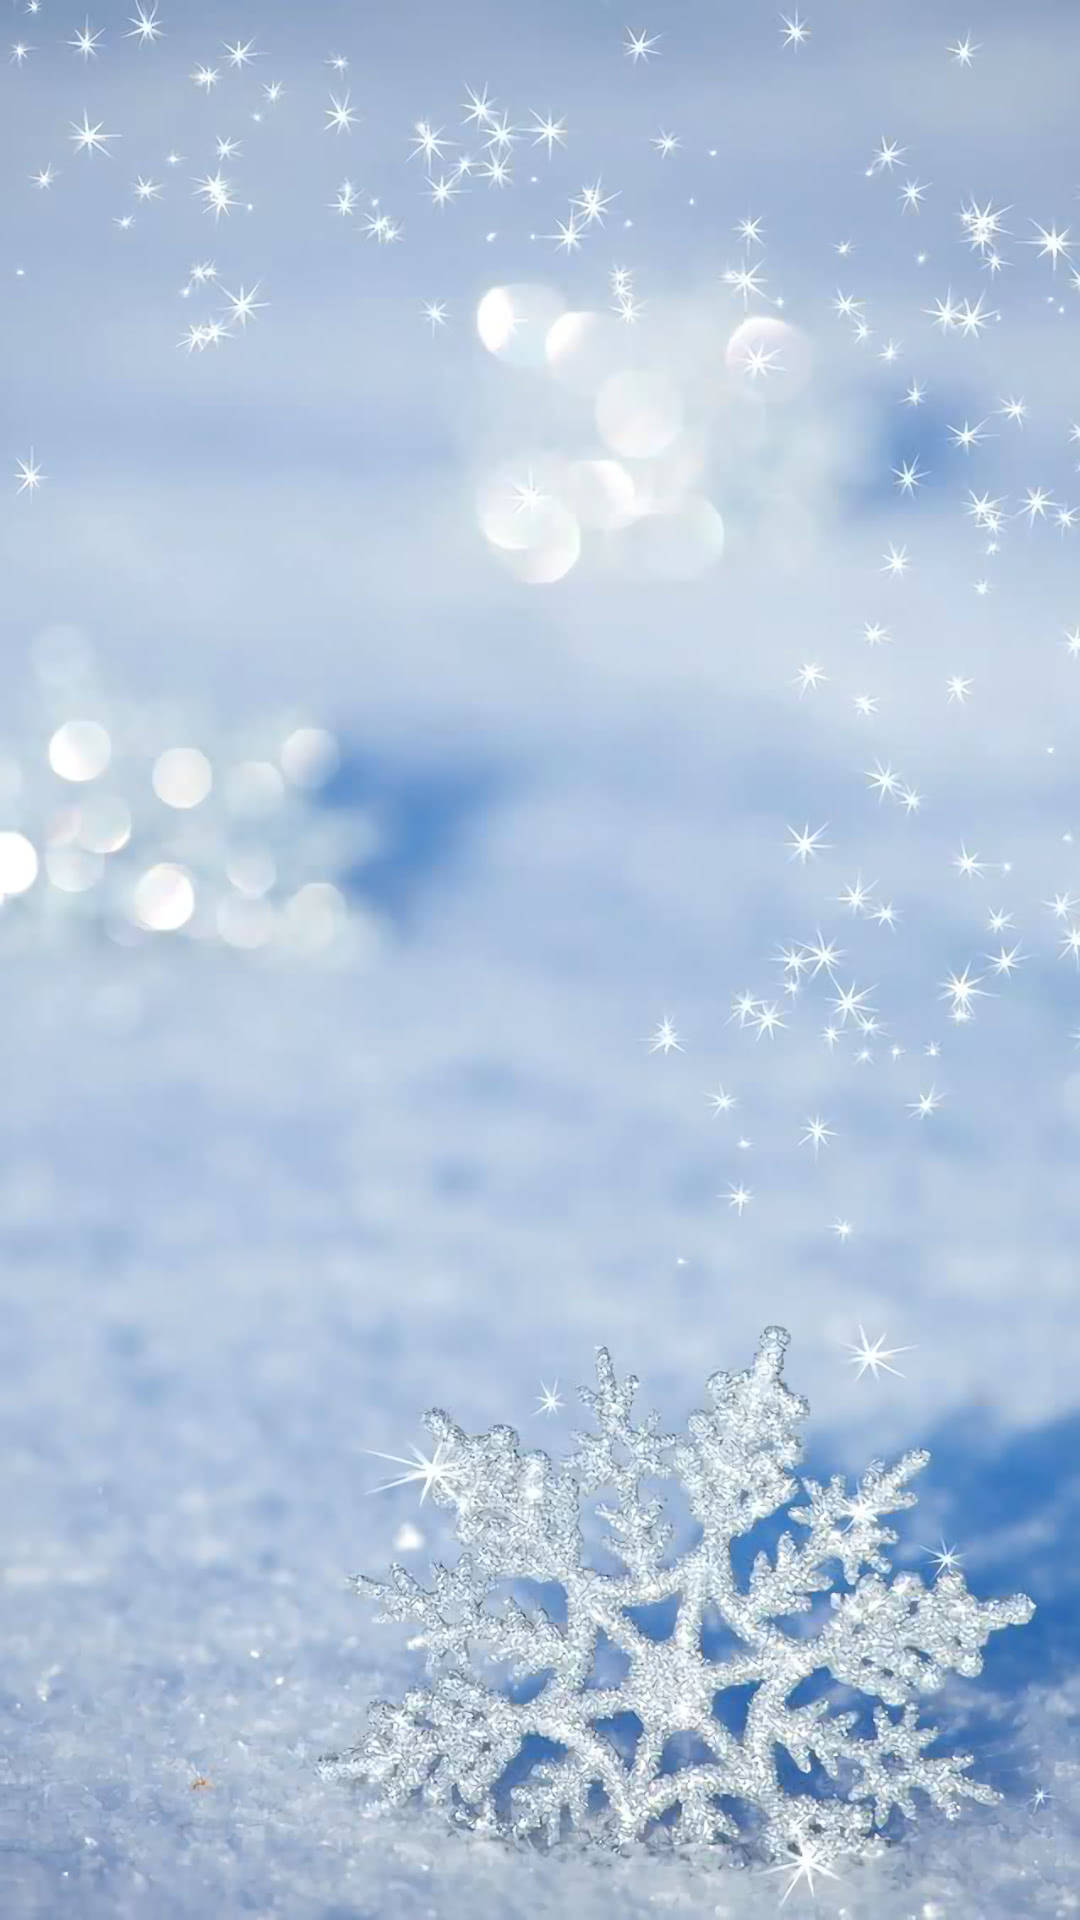 Winterwunderlandperfekt Festgehalten Auf Neuem Schneeflocken-iphone Wallpaper